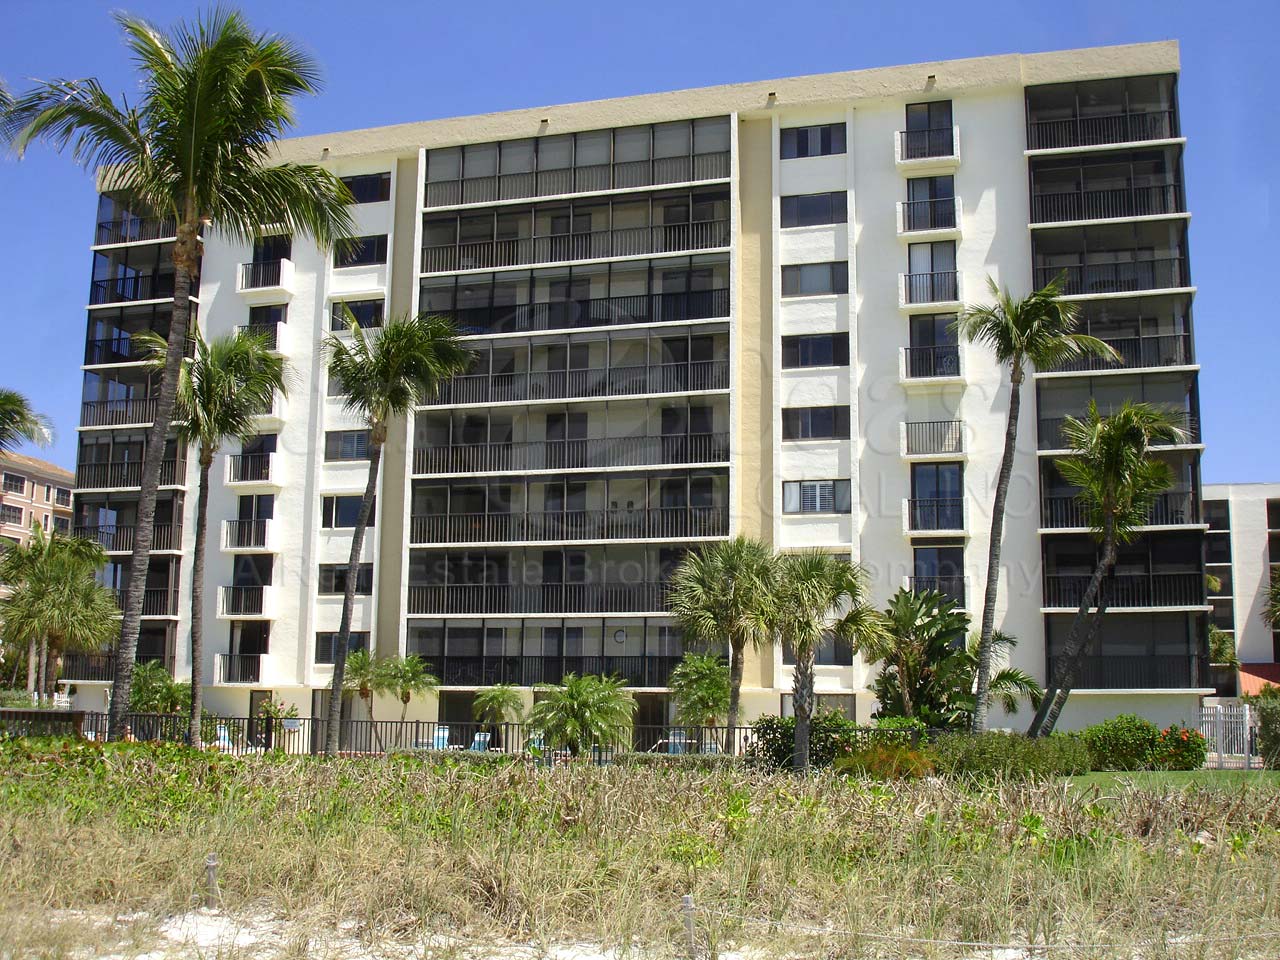 Gulf Shores Condominium Building